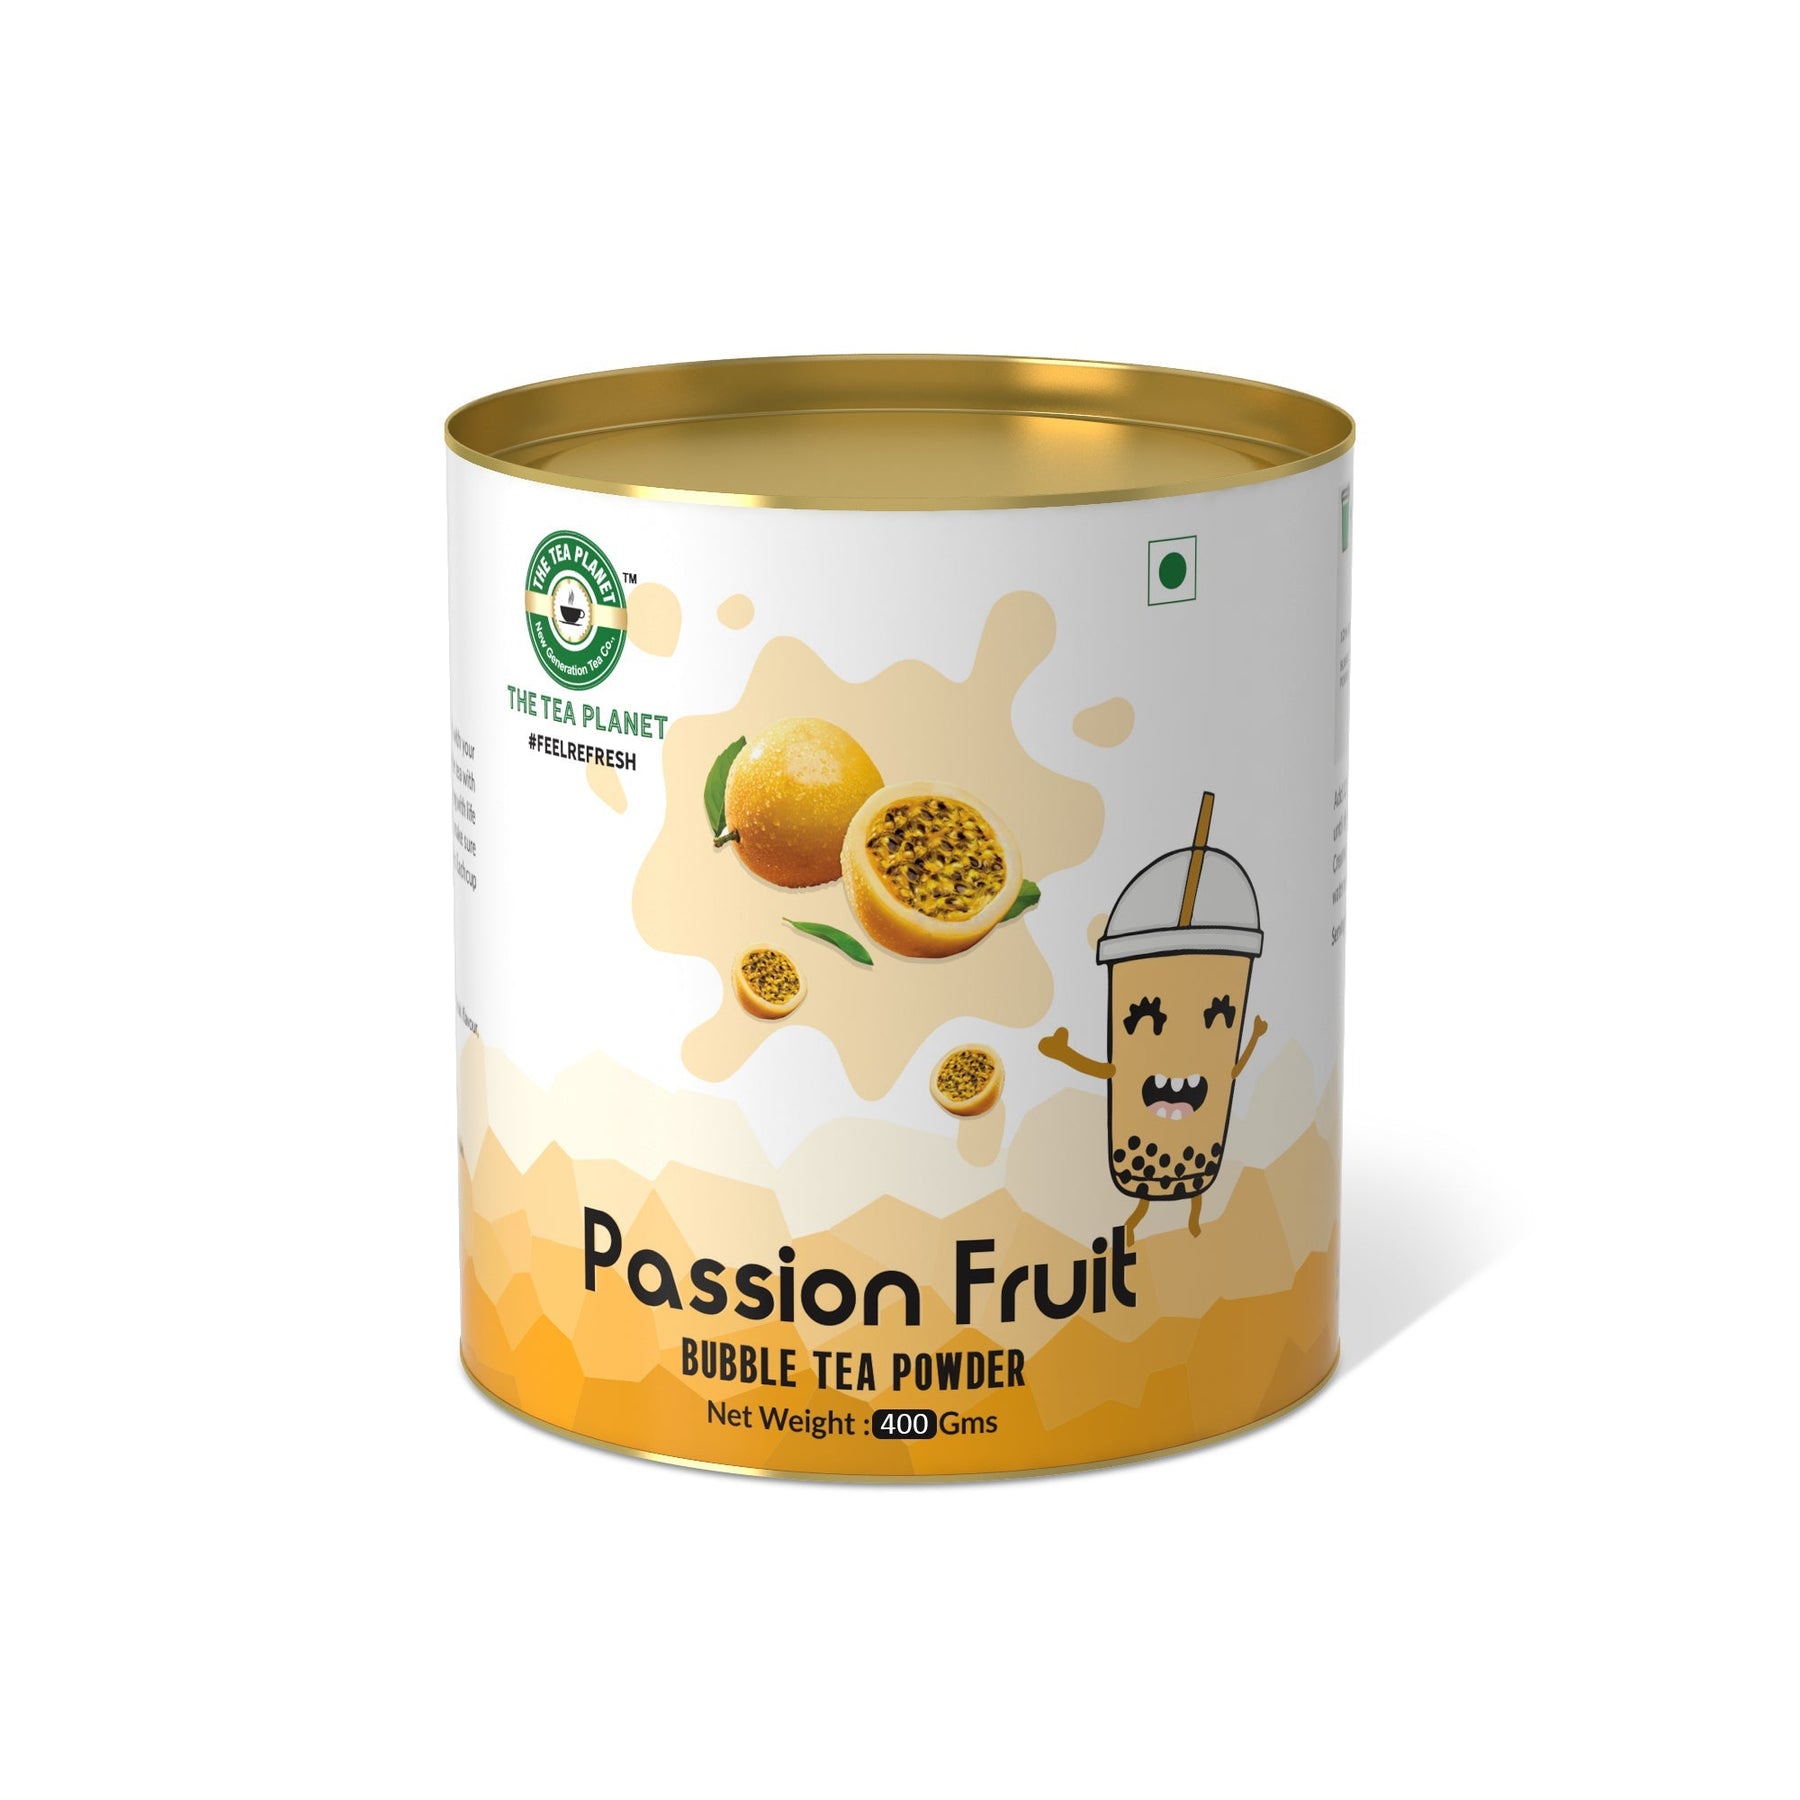 Passion Fruit Bubble Tea Premix - 800 gms